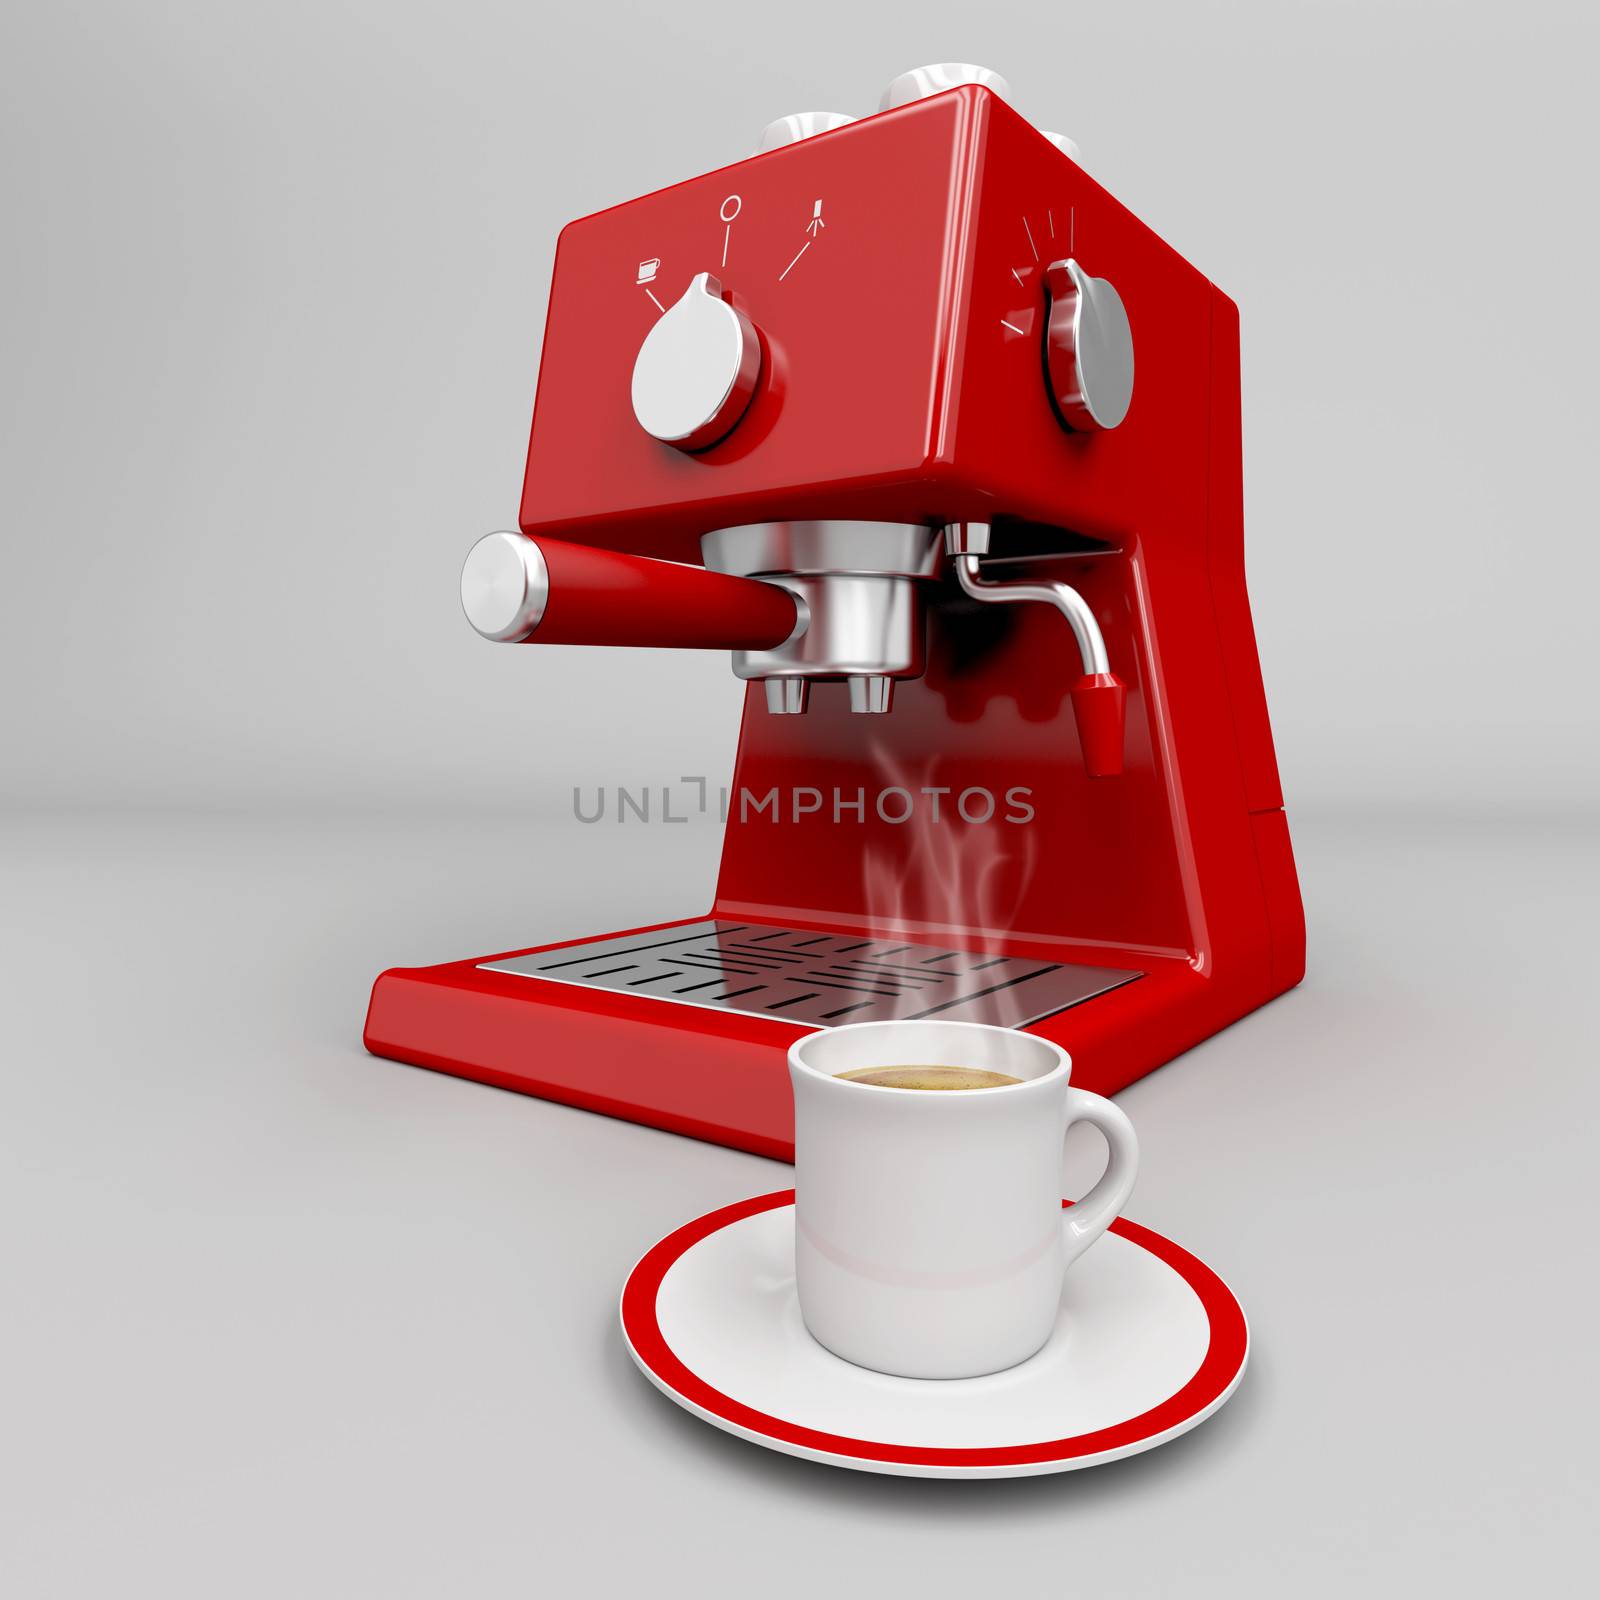 Hot espresso in front of professional espresso machine